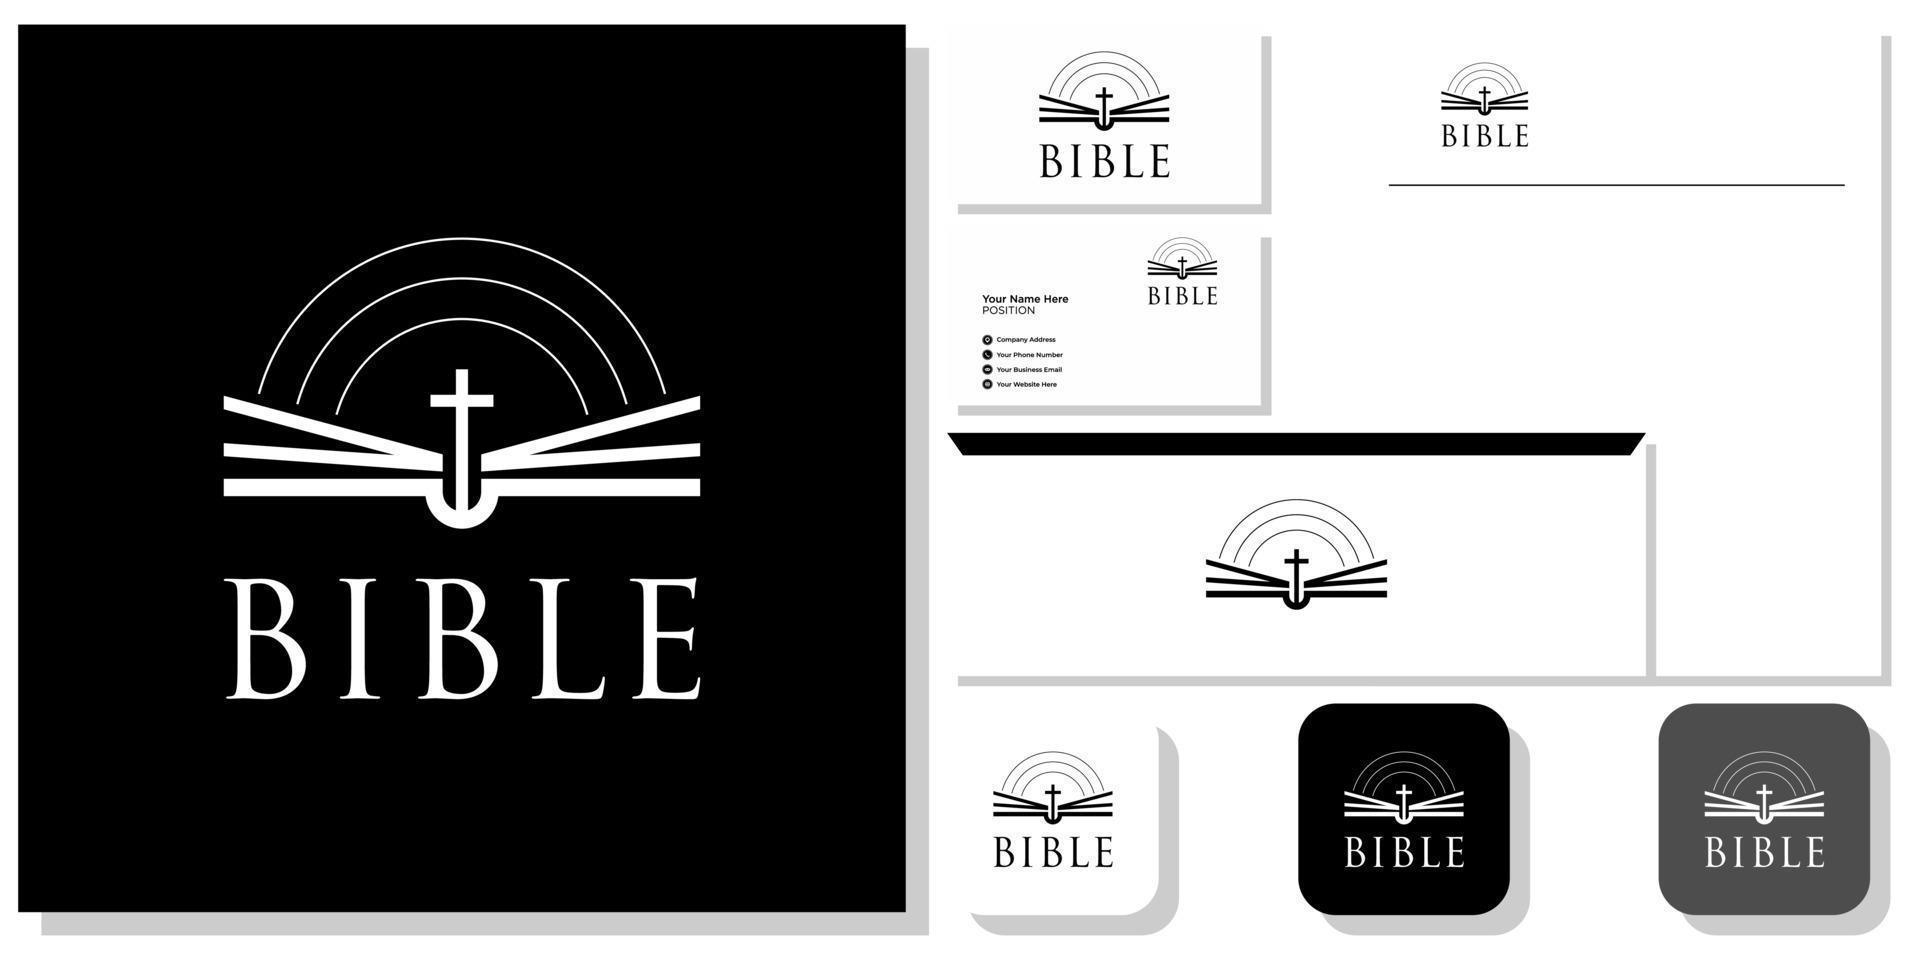 biblia libro iglesia religión jesús biblia oración con plantilla de identidad de marca vector